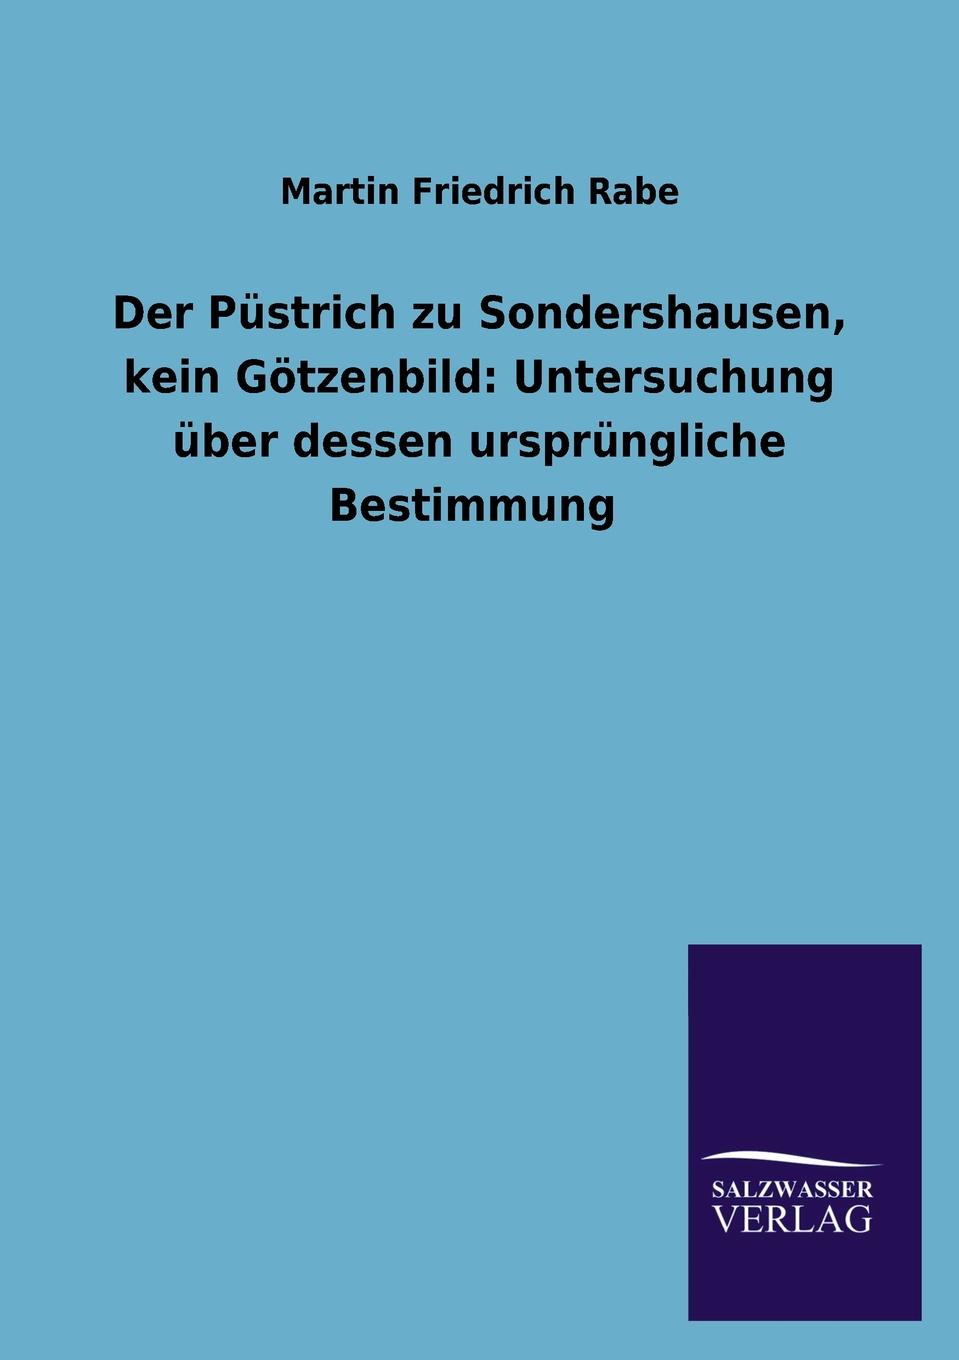 Martin Friedrich Rabe Der Pustrich zu Sondershausen, kein Gotzenbild. Untersuchung uber dessen ursprungliche Bestimmung